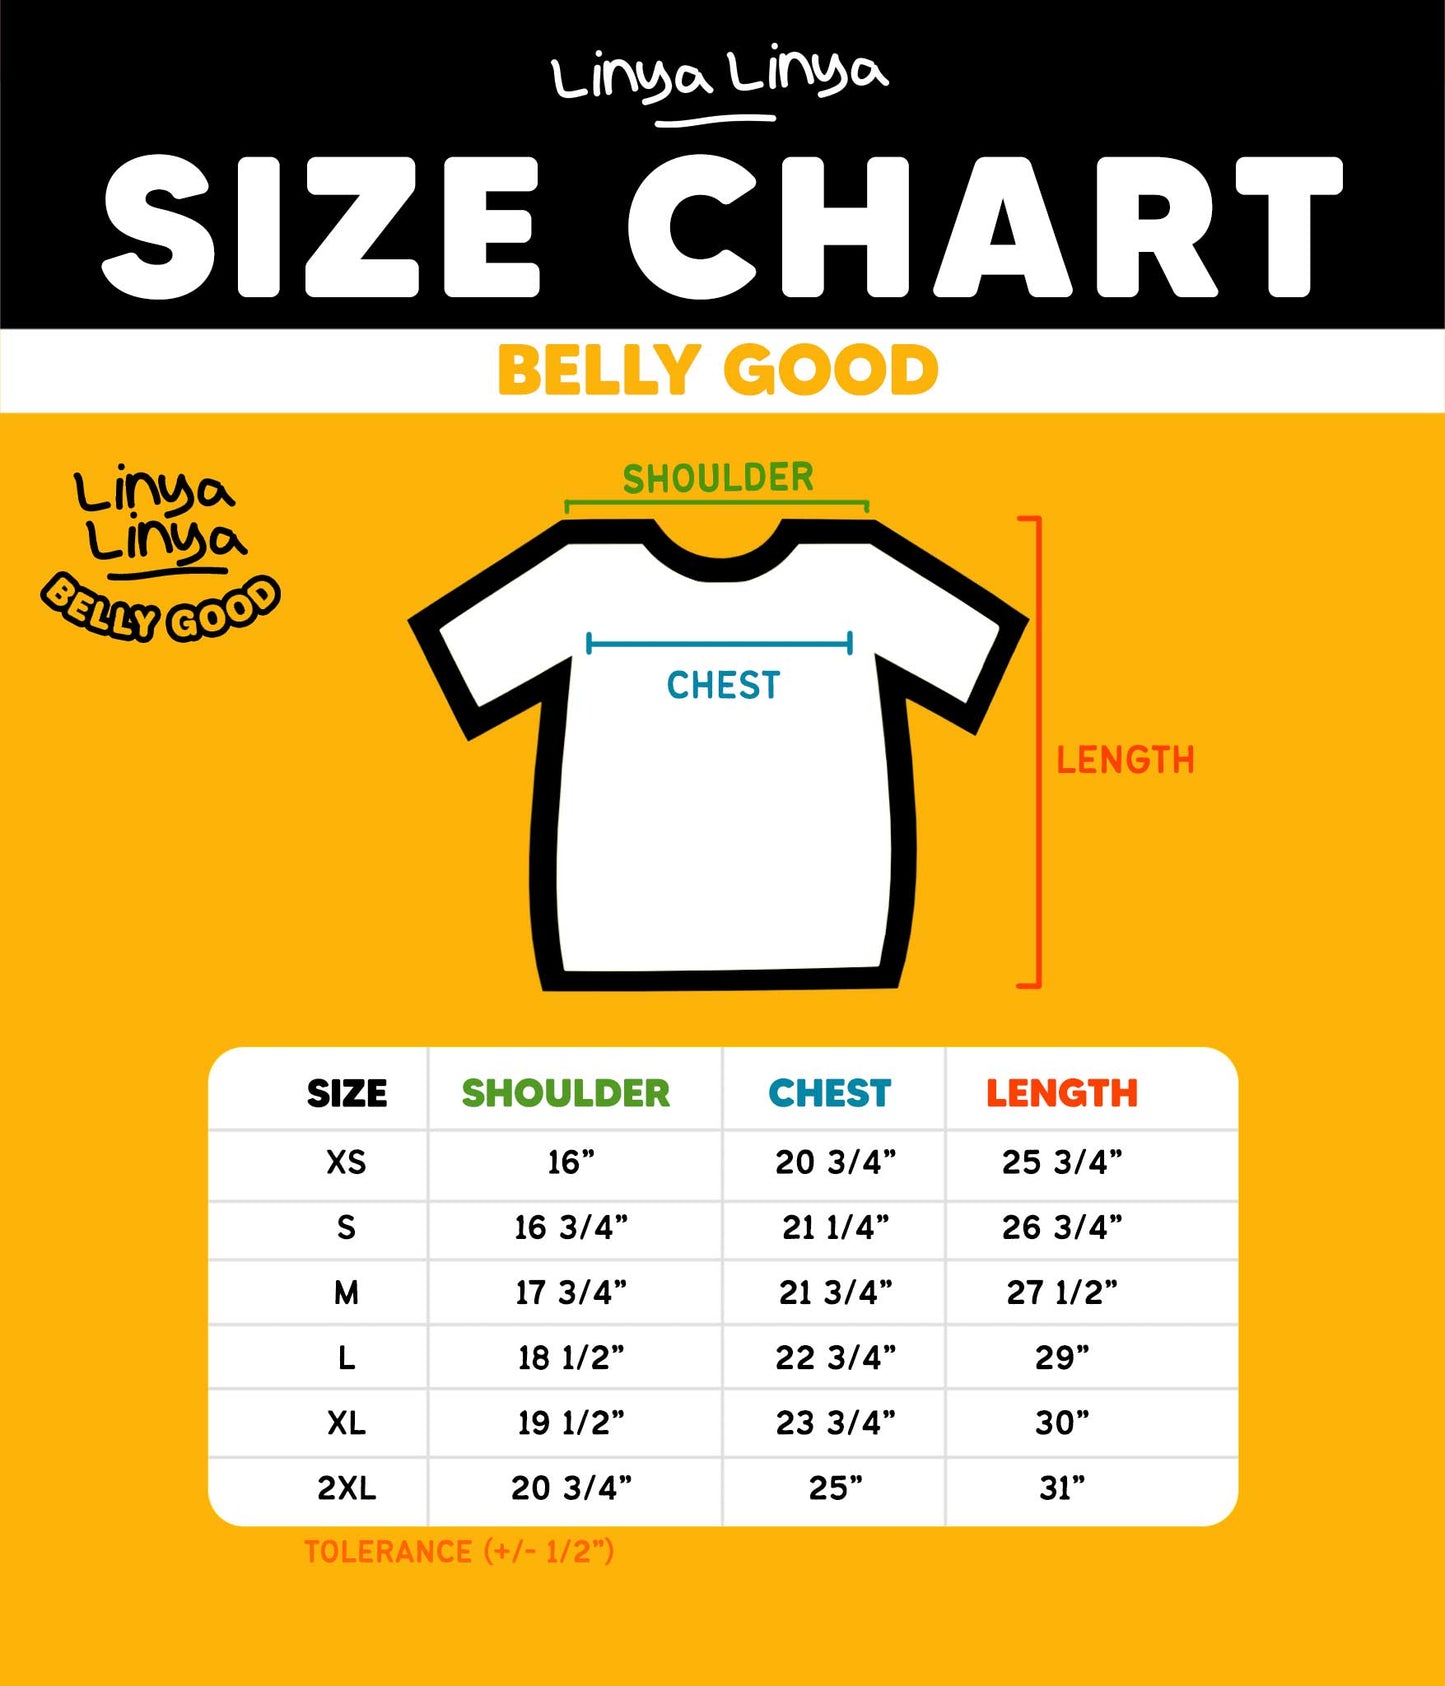 Belly Good: Linya-Linya x Pol Medina Jr : Weight Loss? Wait Lang! (White)